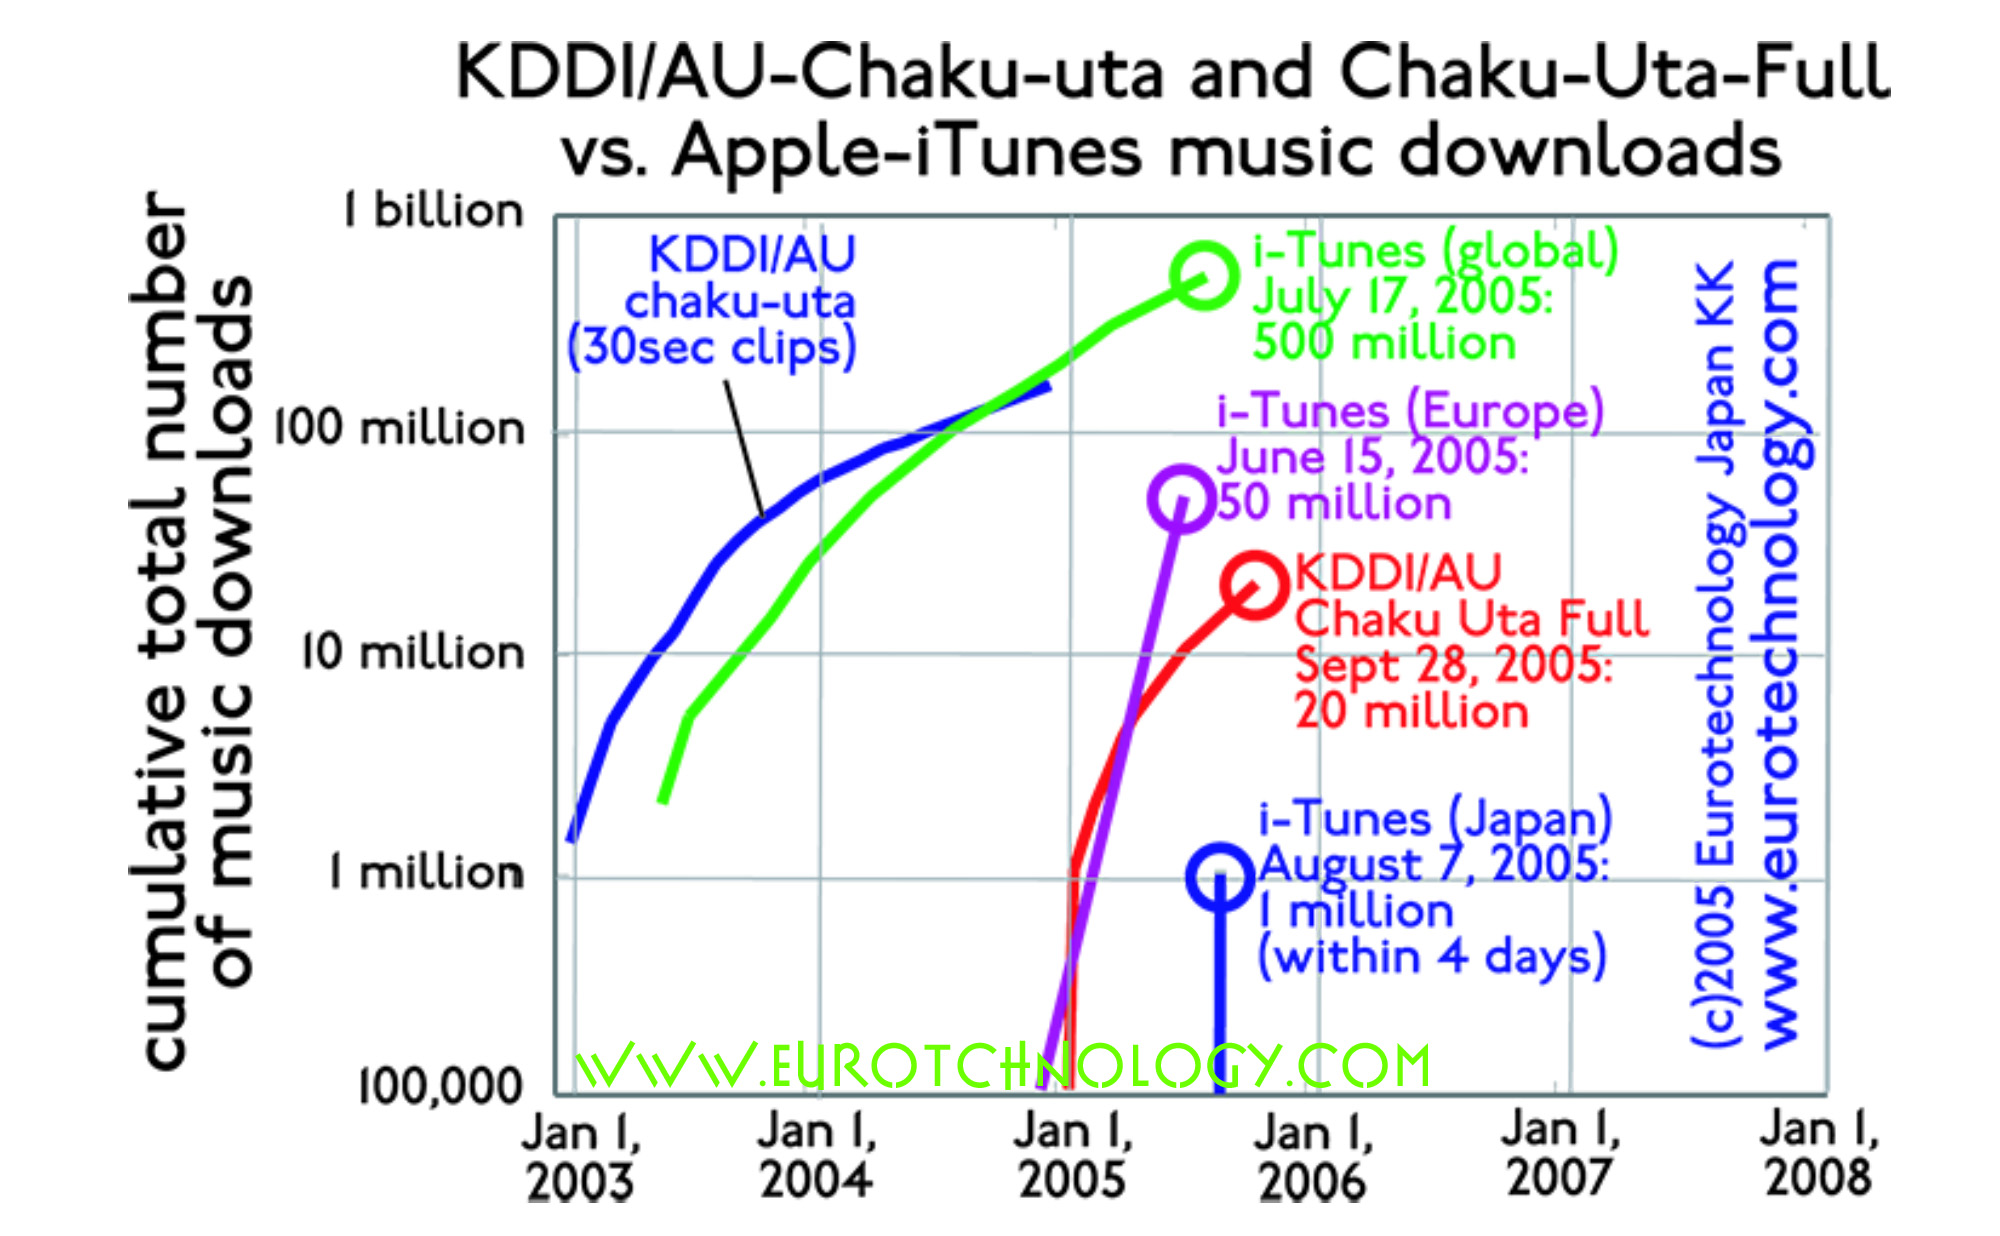 Chaku-Uta-Full: 5 million mobile music downloads in Japan